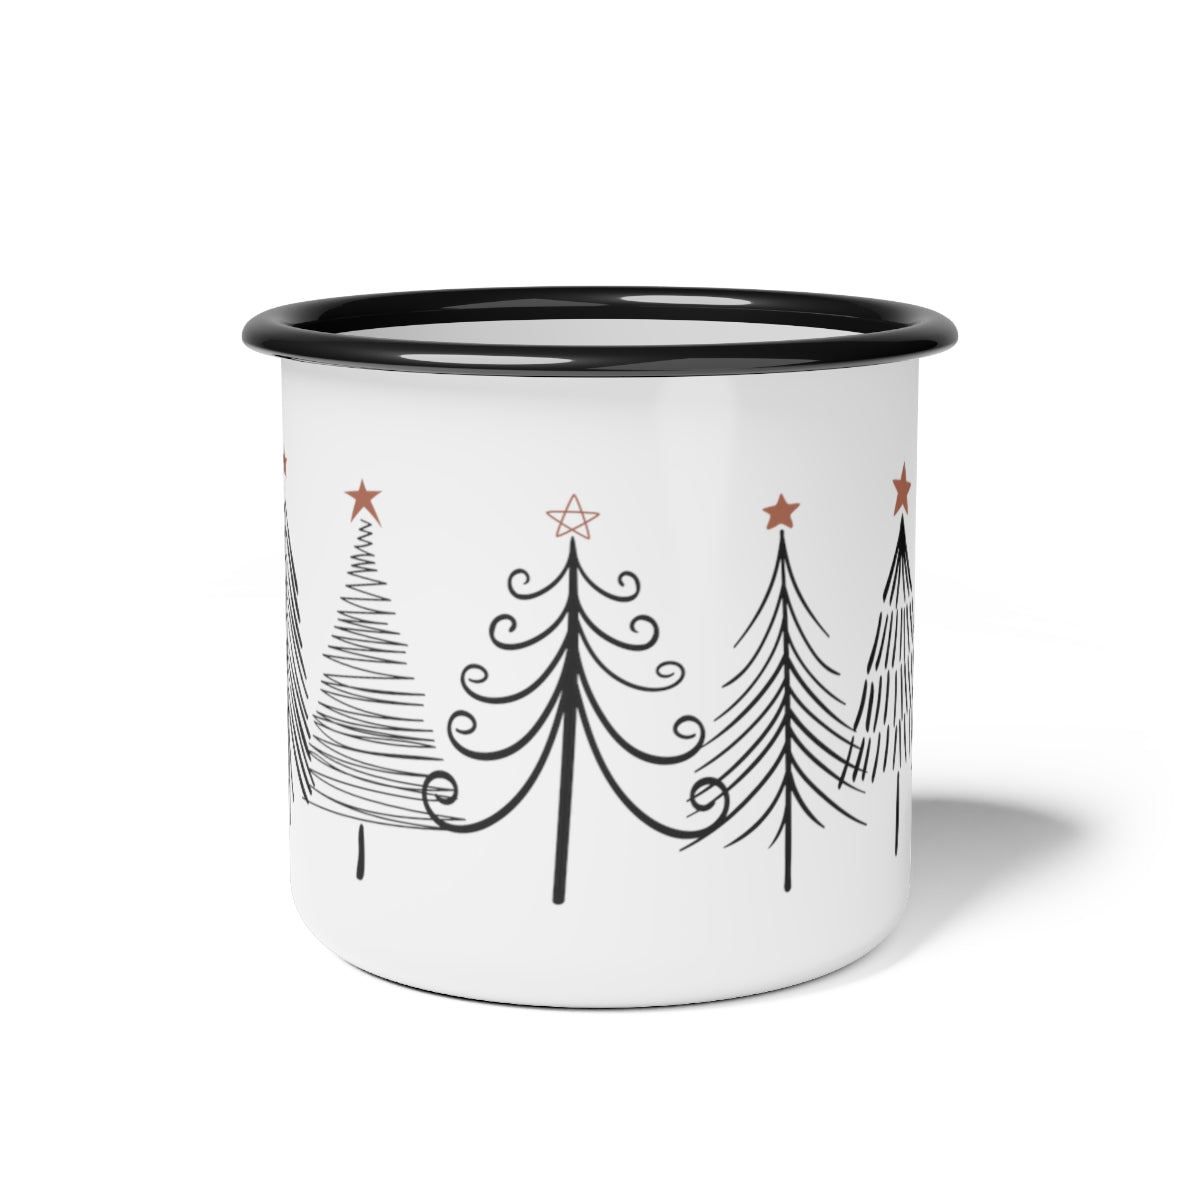 Minimalist Mid Century Modern Christmas Tree Enamel Camp Mug